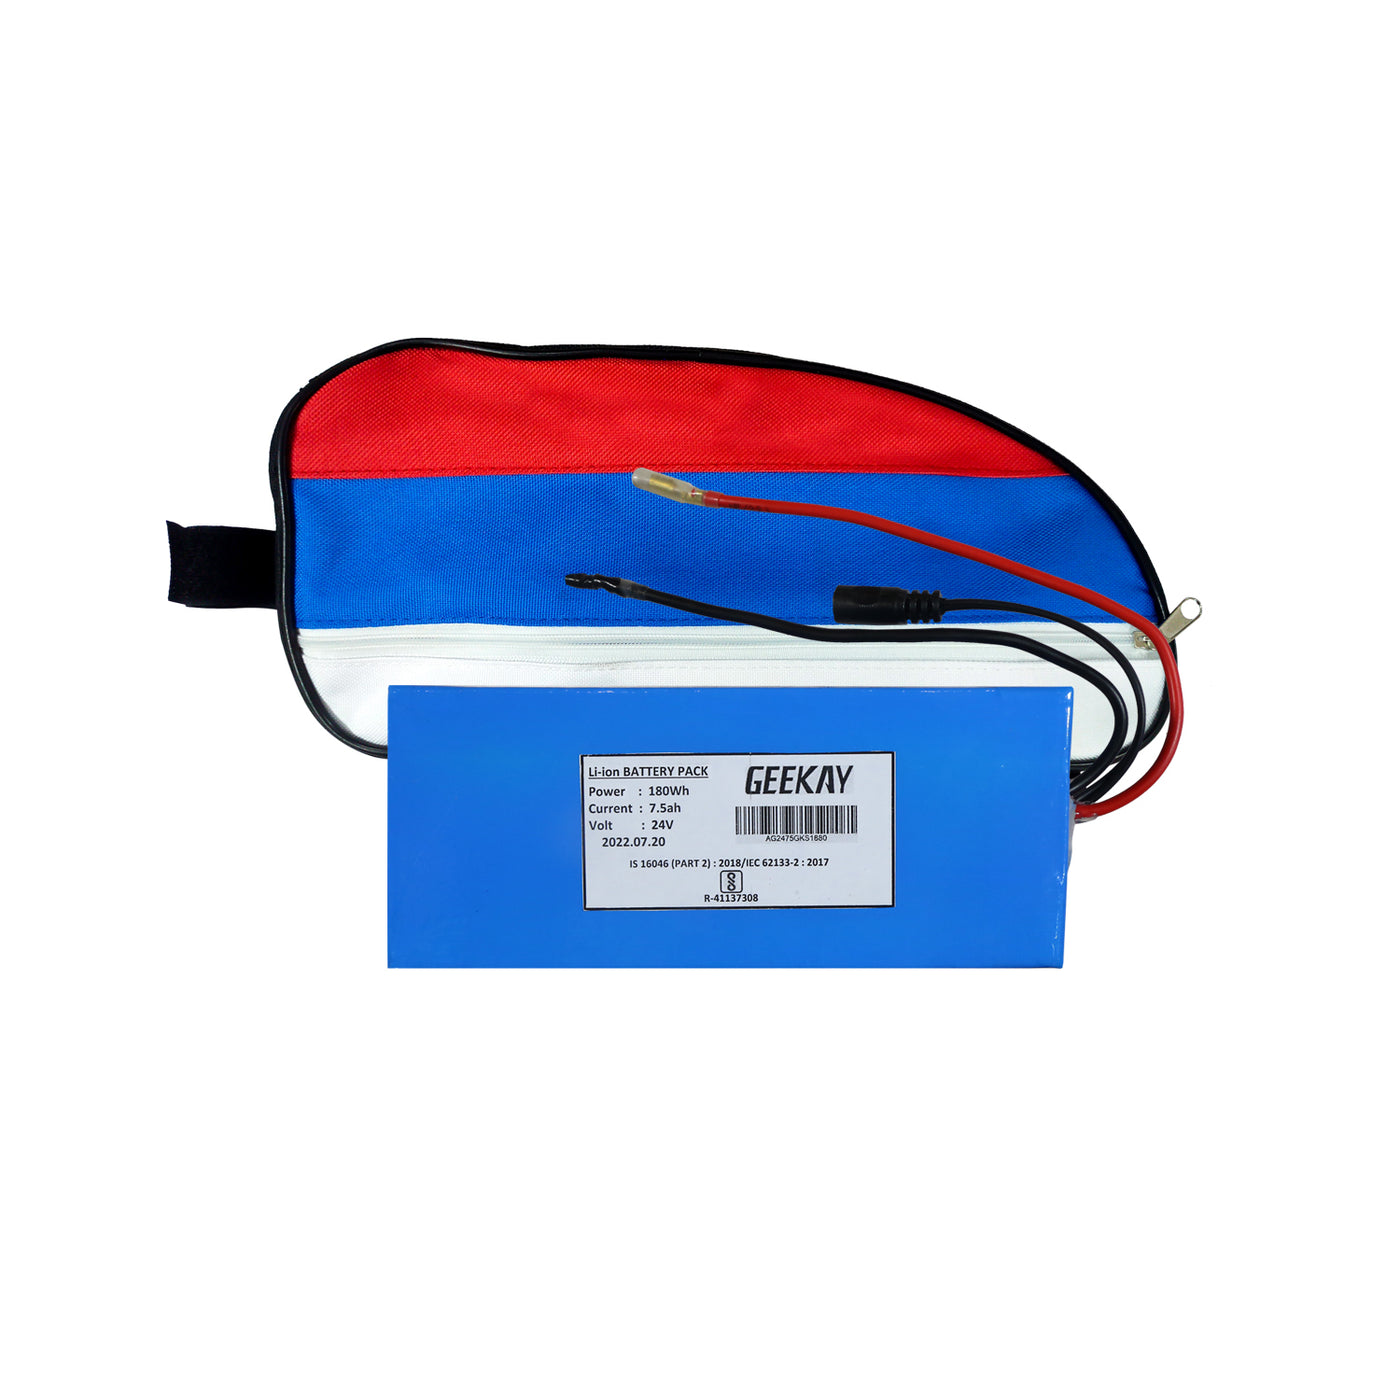 24V Li-ion Battery for Geekay PMDC Side Motor Kit